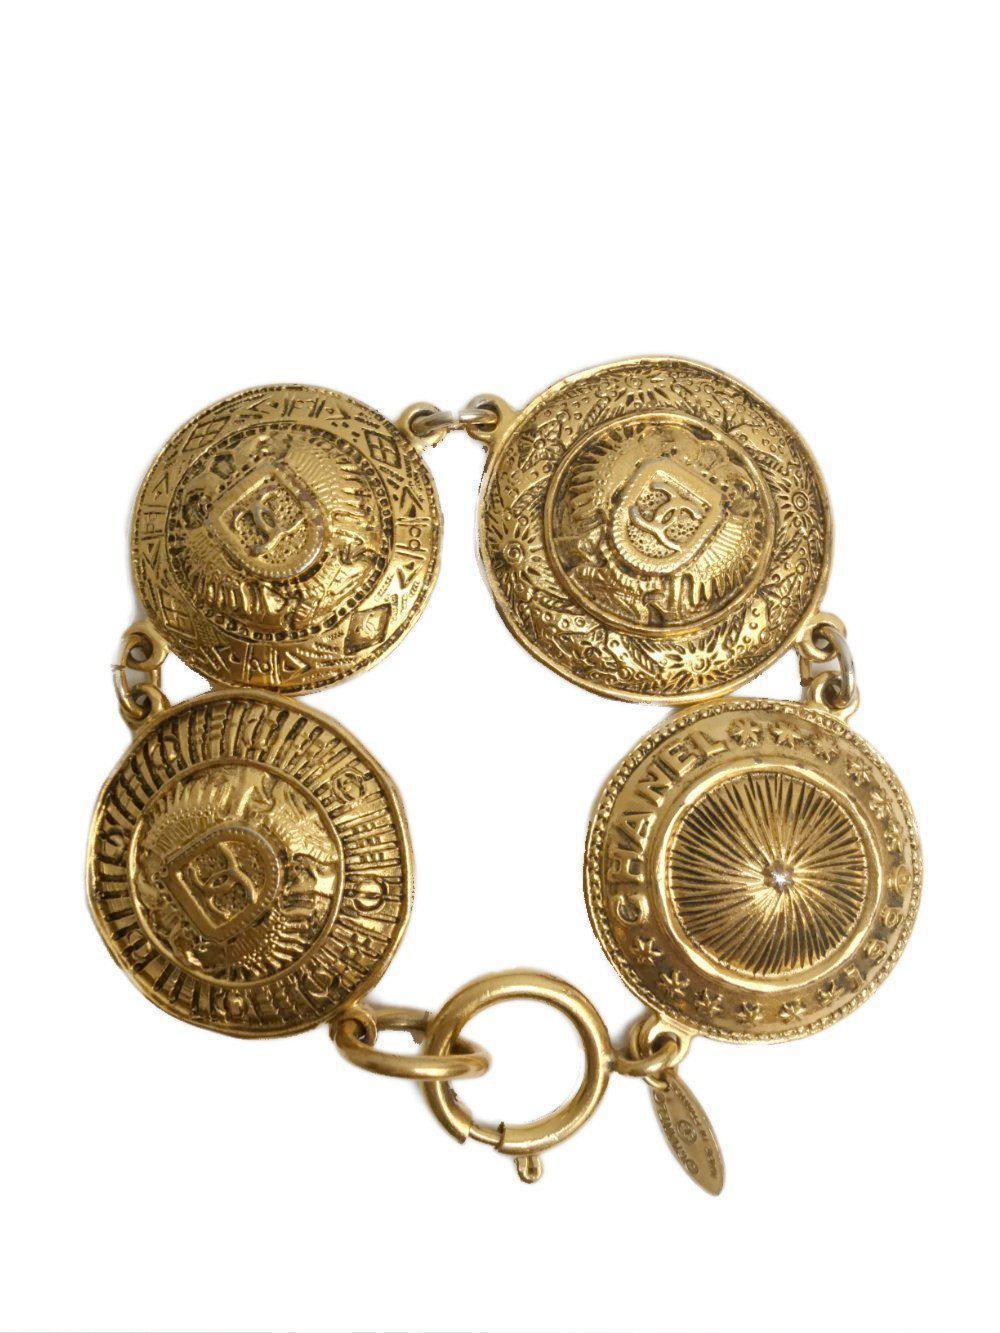 Vintage Gold Medallion Charm Bracelet-designer resale